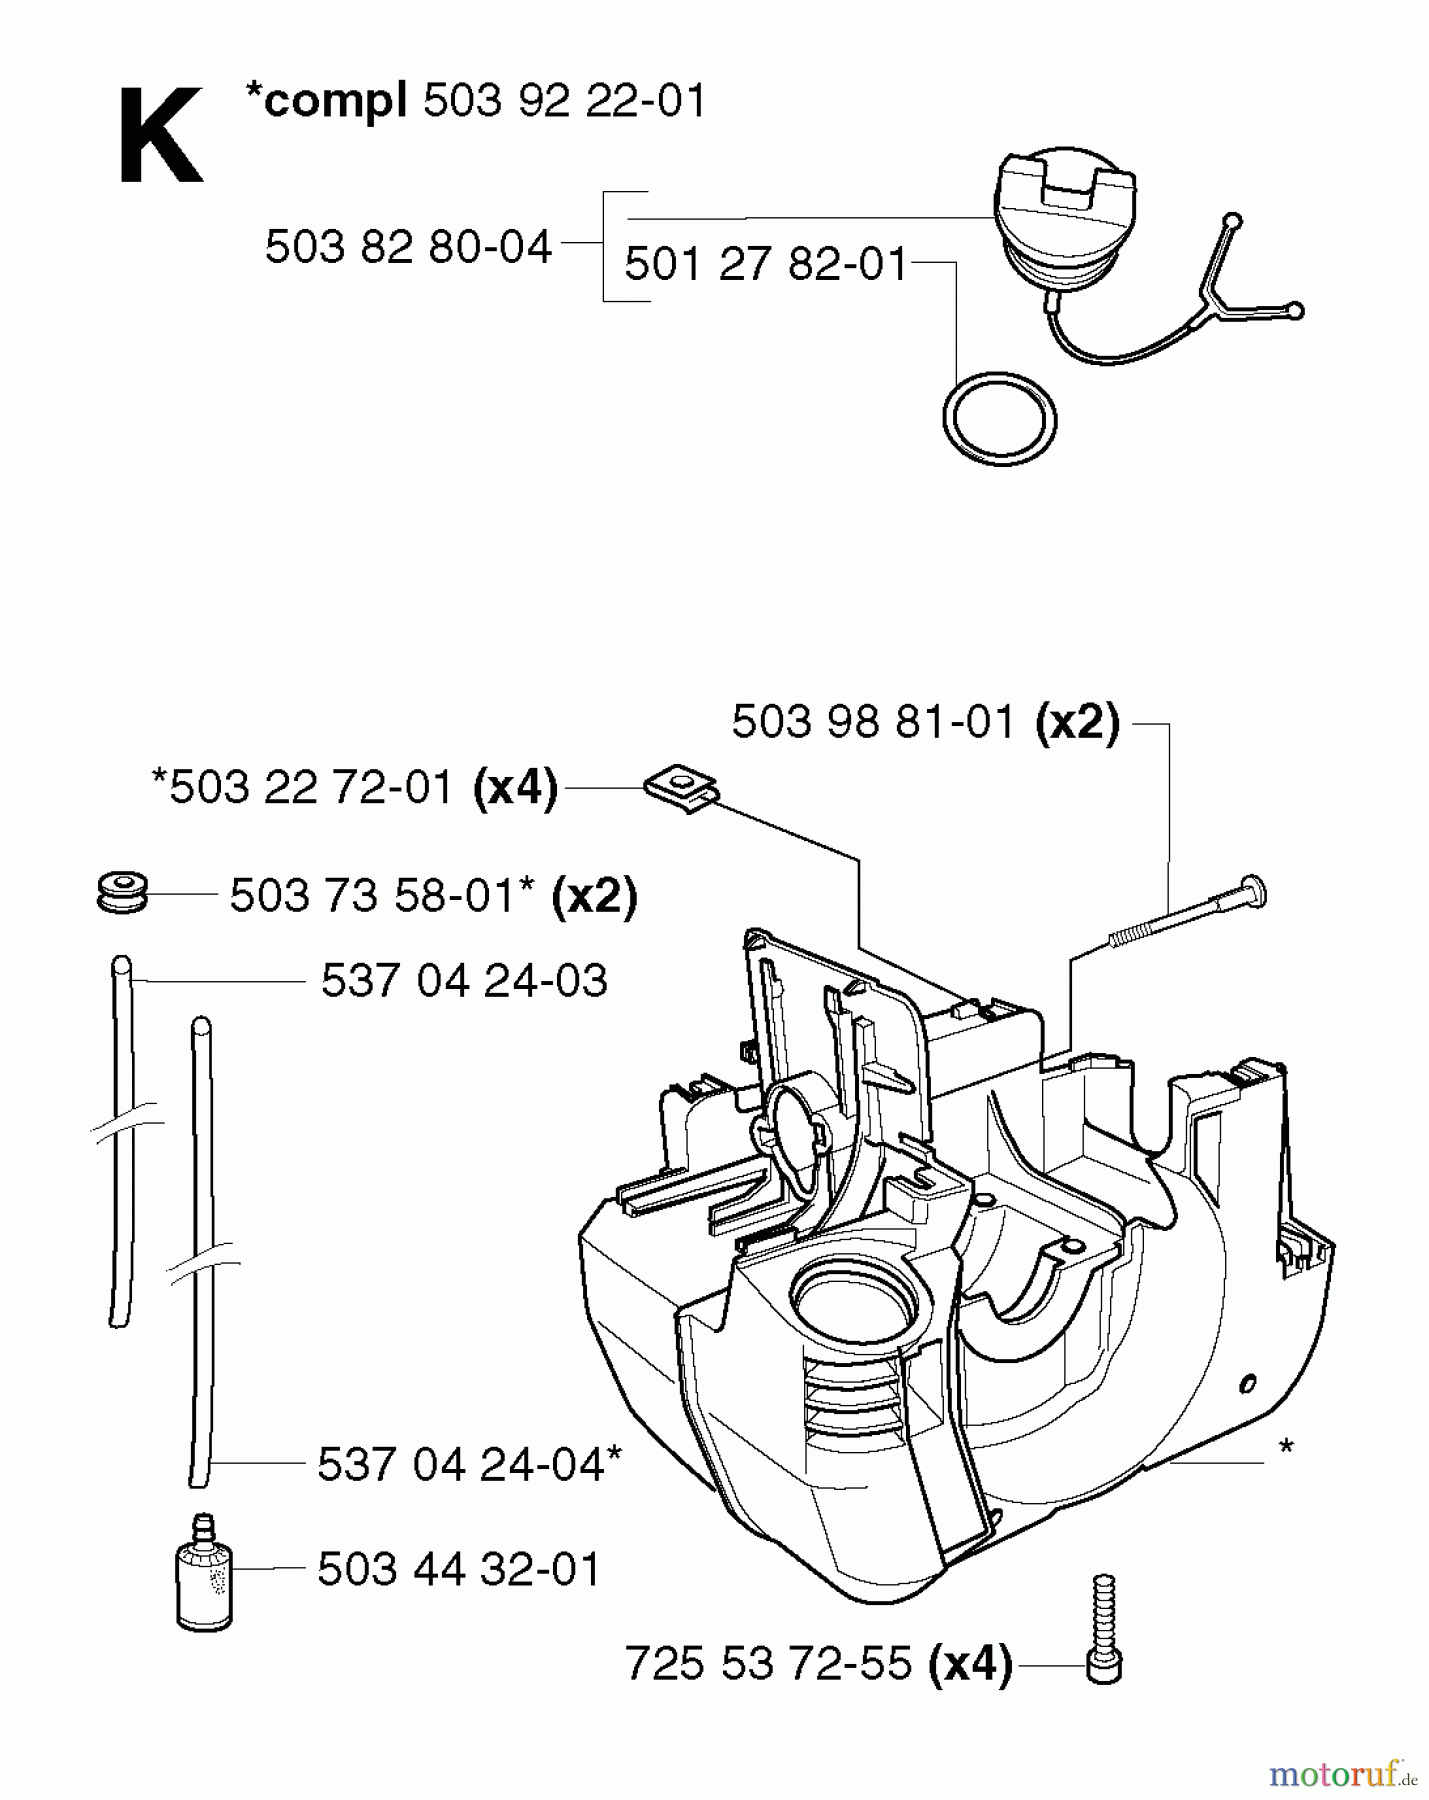  Jonsered Motorsensen, Trimmer GR2036 - Jonsered String/Brush Trimmer (2002-08) CRANKCASE